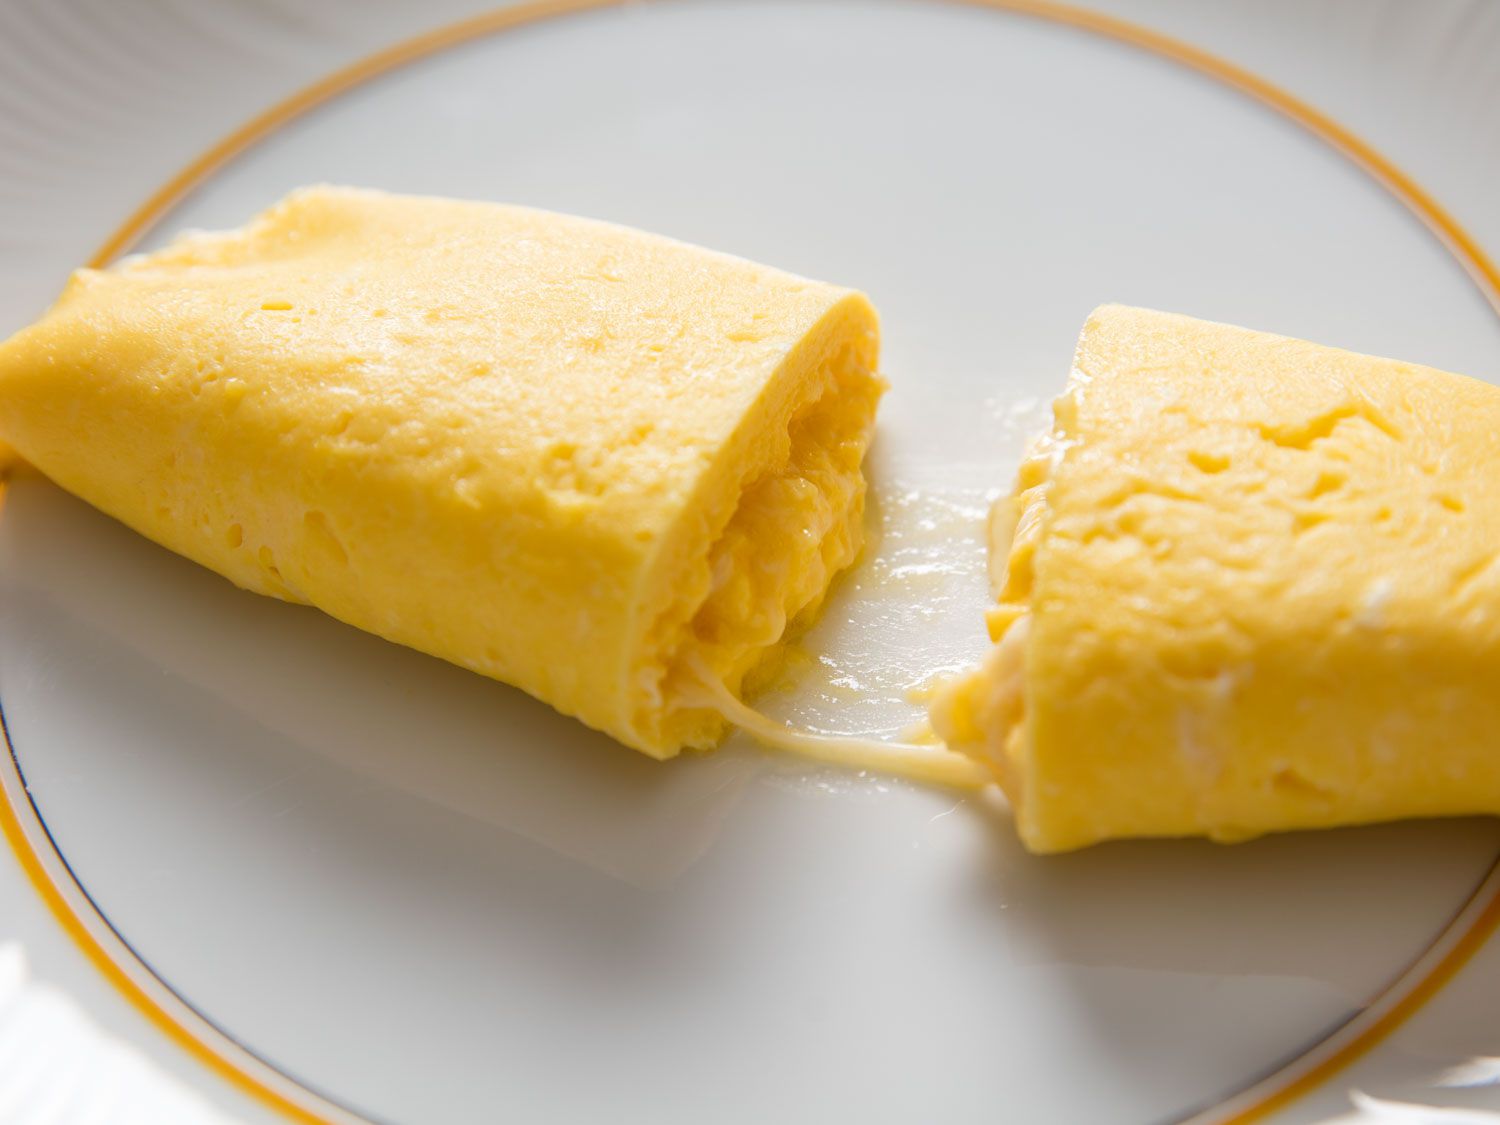 法式煎蛋卷中间有奶酪，切开放在白色盘子上。gydF4y2Ba